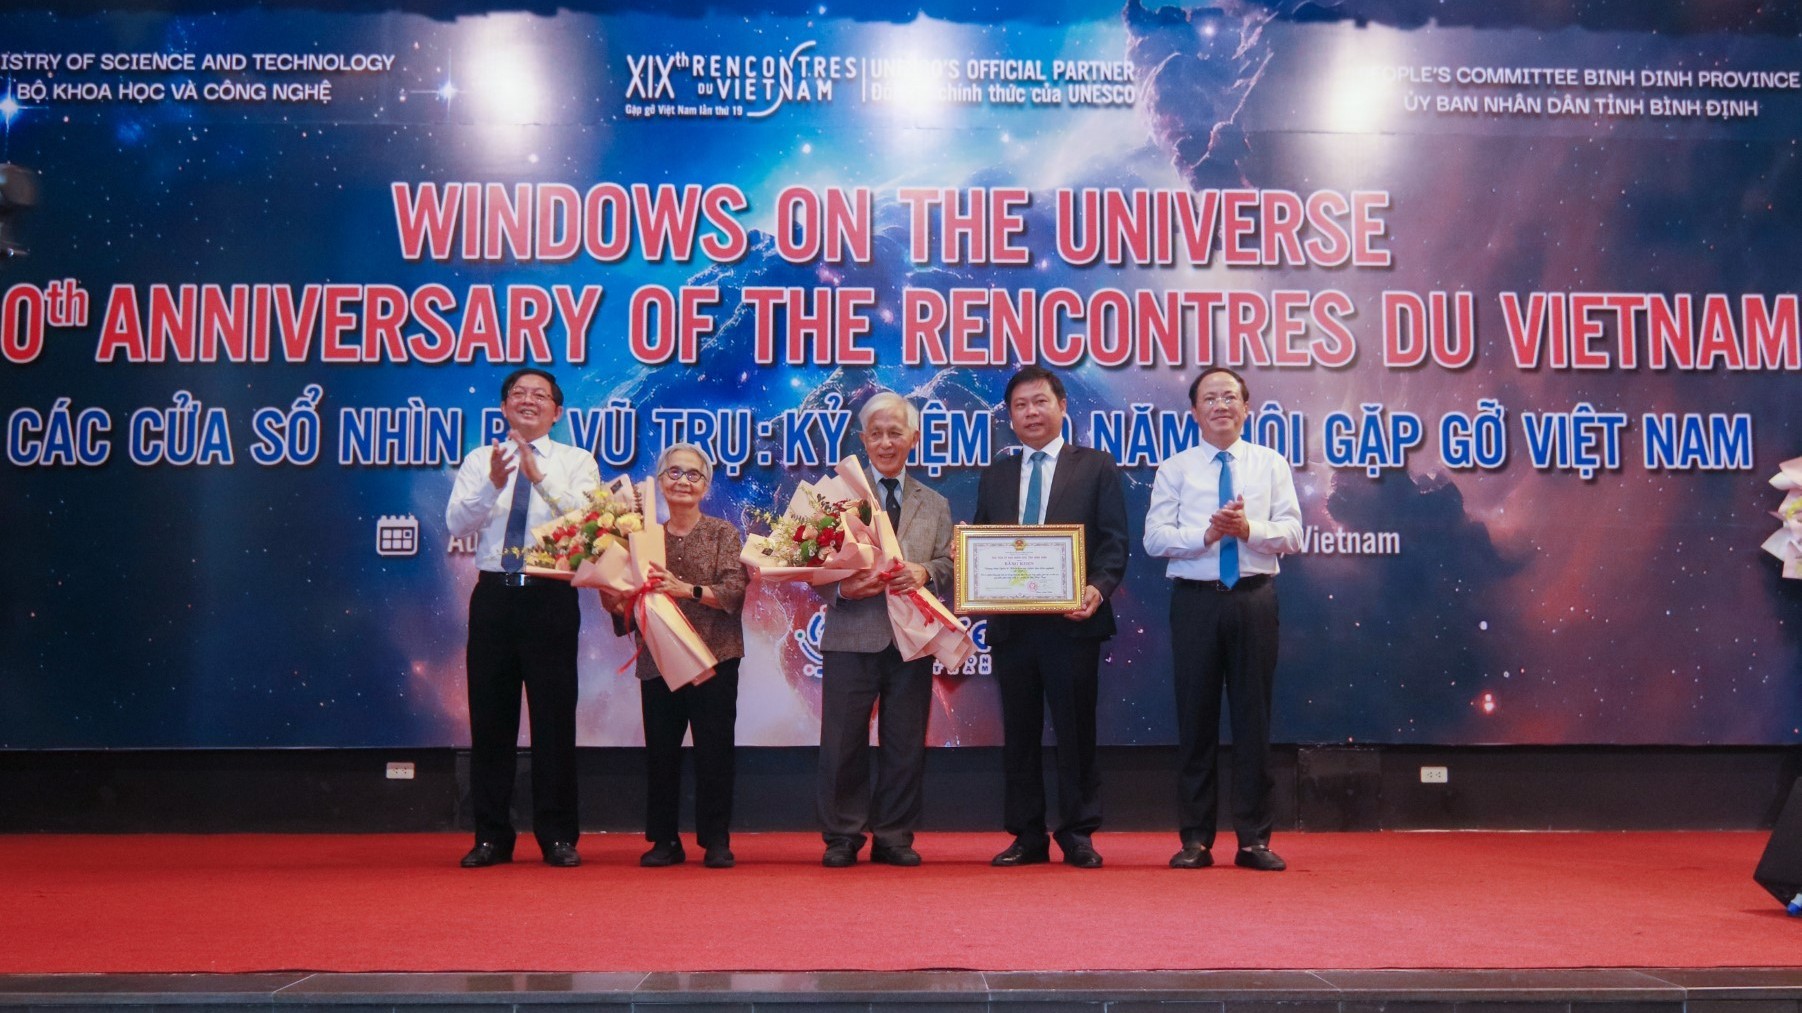 "Các cửa sổ nhìn ra vũ trụ": Diễn đàn học thuật của các nhà khoa học trong nước và quốc tế